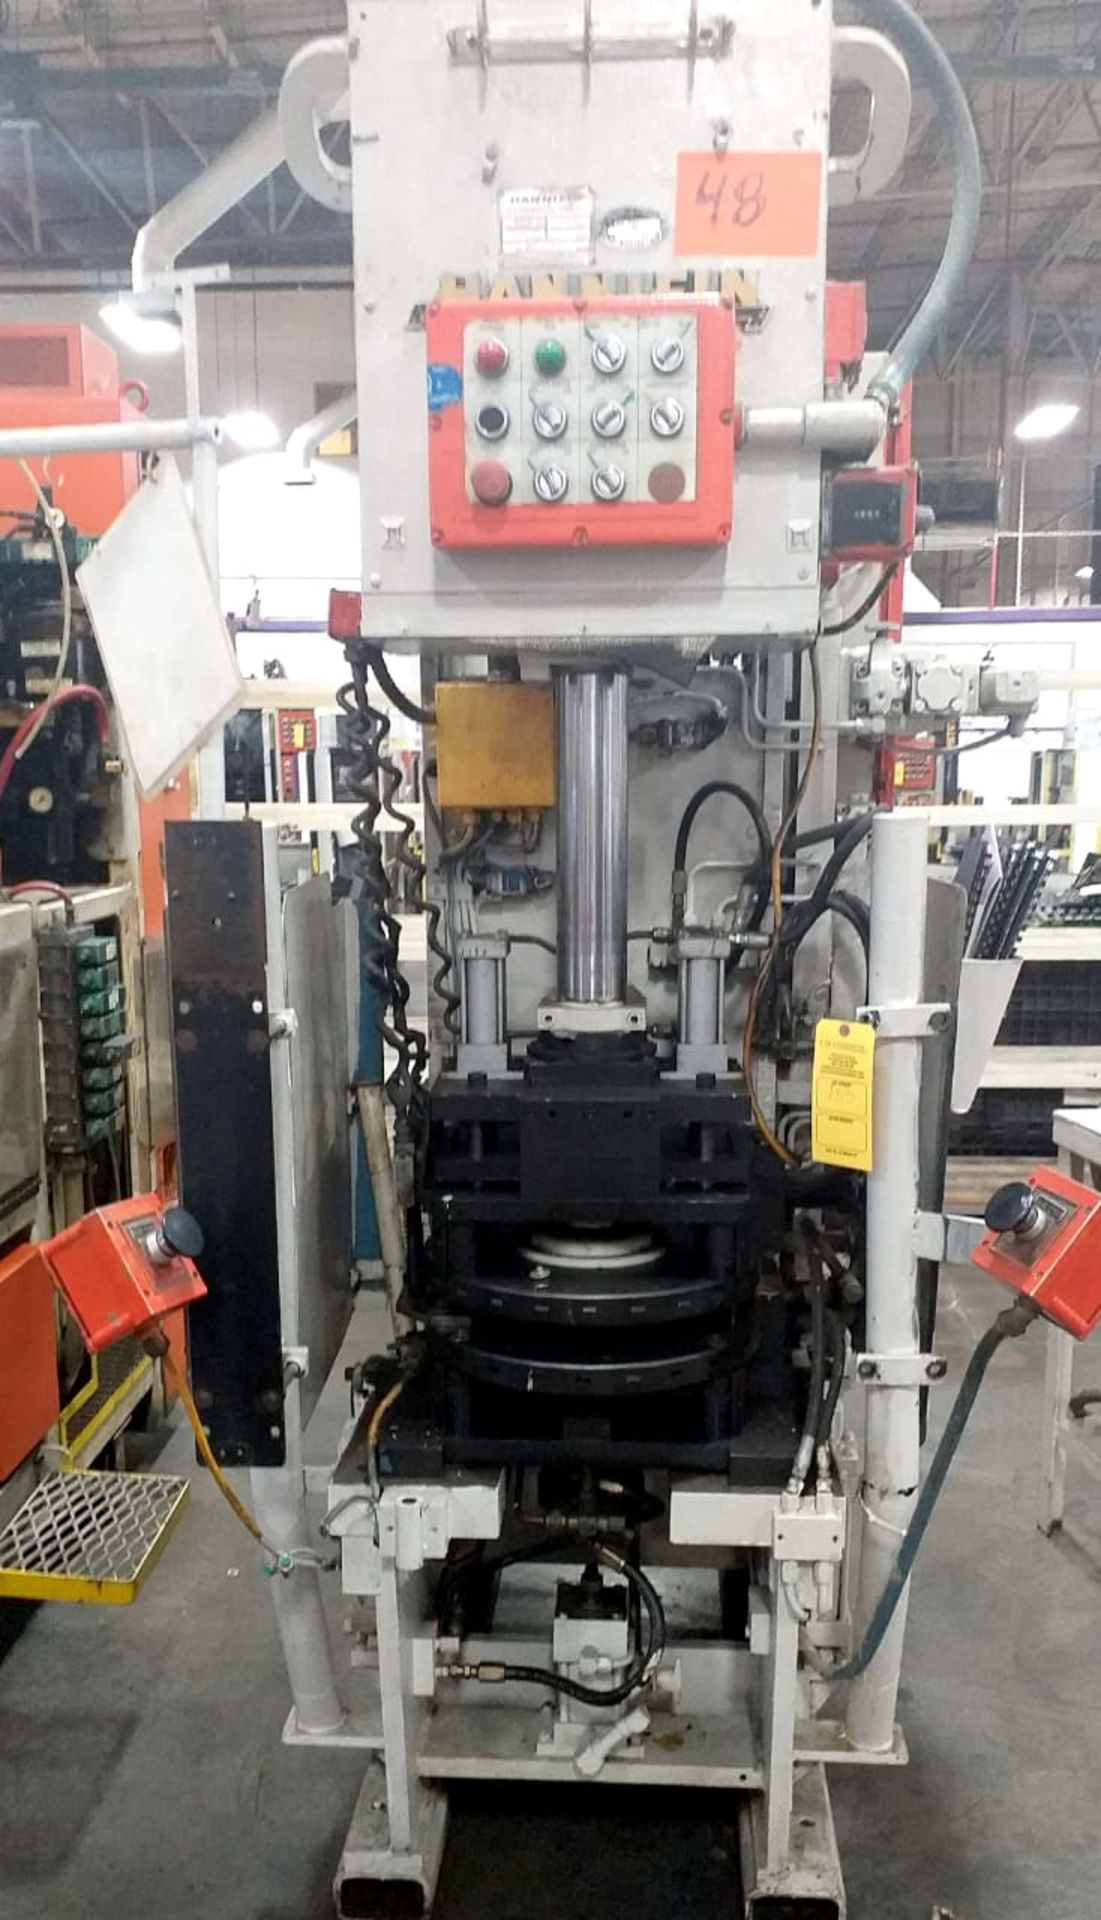 HANNIFIN Hydraulic press, Model 15-24-18-28-2-2-M, N/S F519 8 9, 15 Tons, PSI Max 1530, Máquina